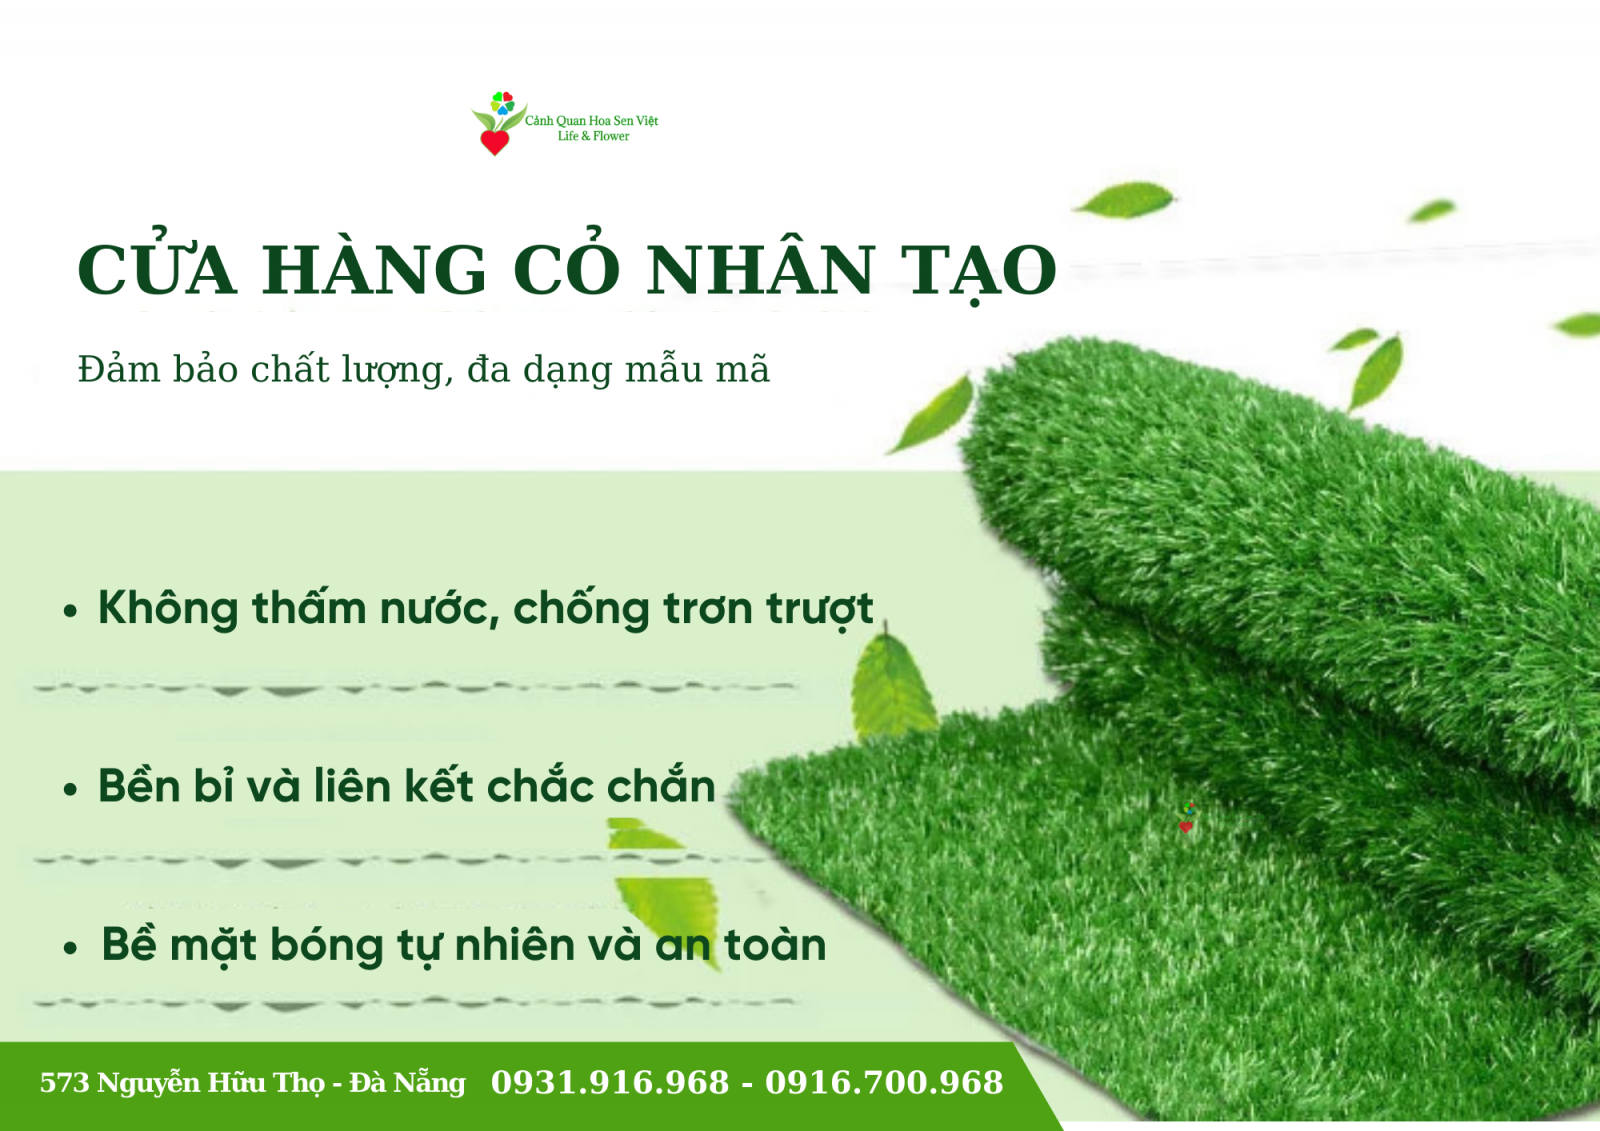 Mua bán cỏ nhân tạo Đà Nẵng- Cửa hàng cỏ nhân tạo Hoa Sen Việt